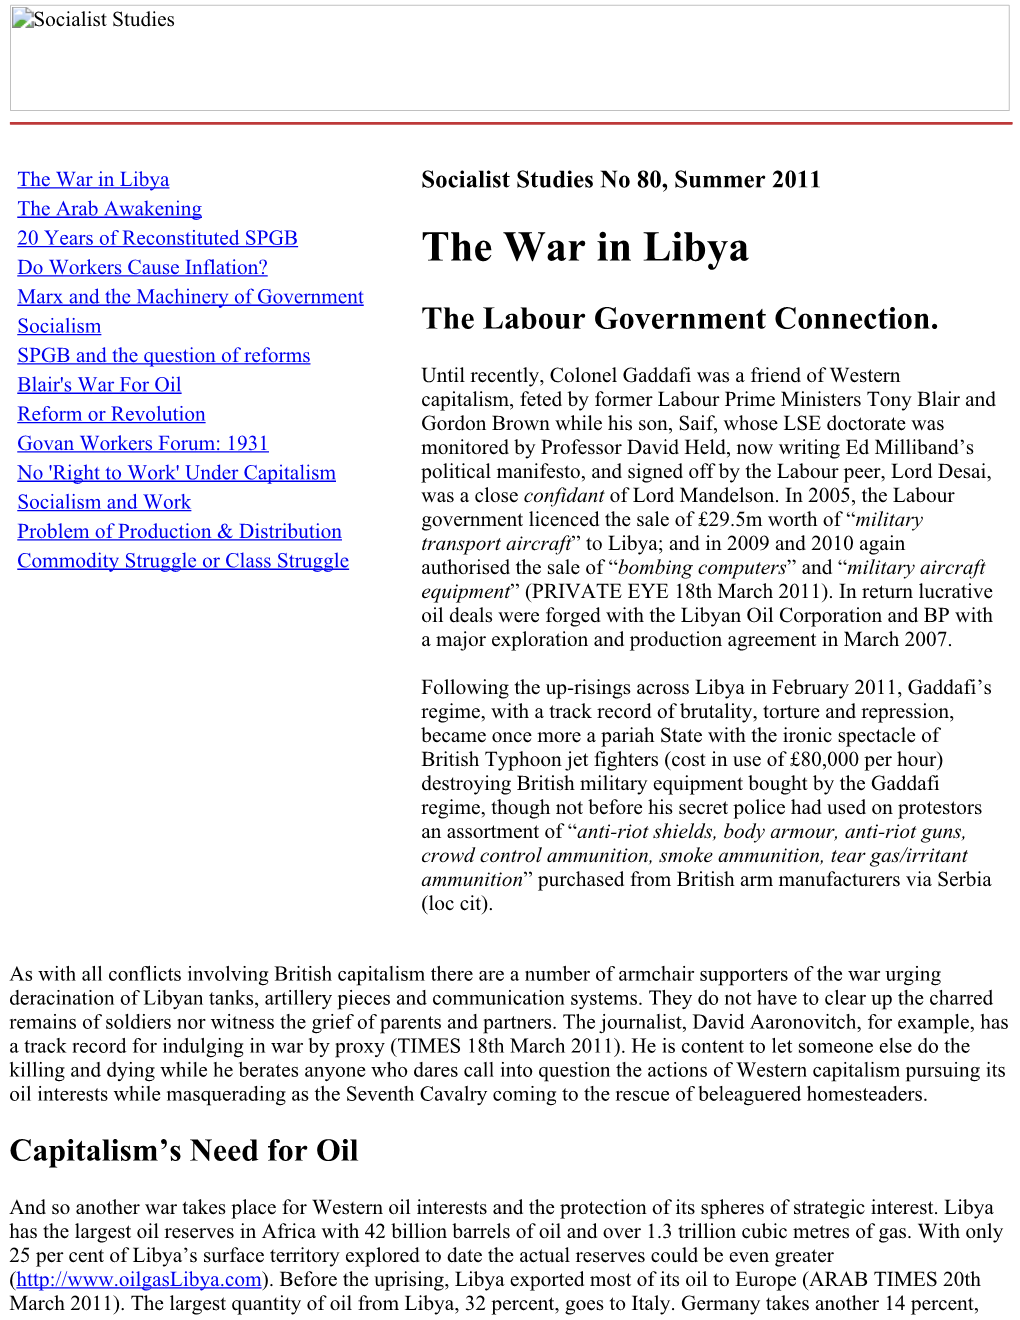 The War in Libya